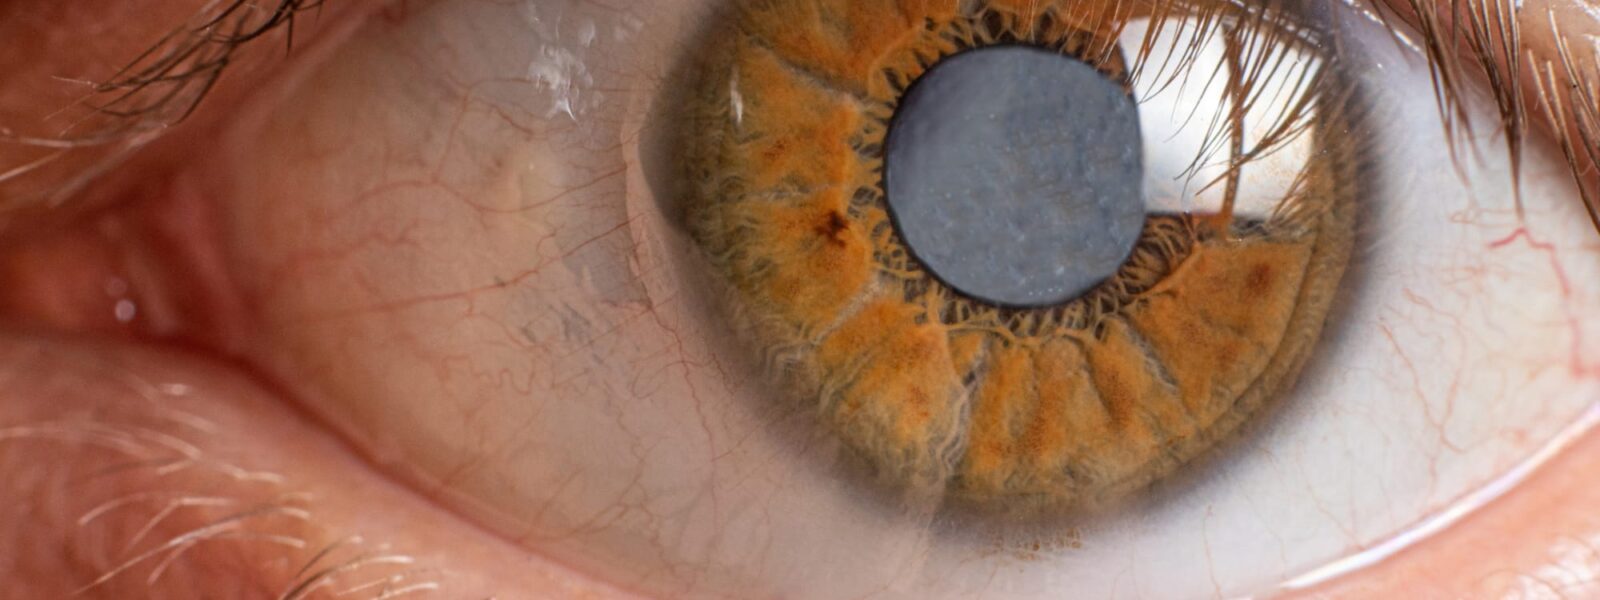 Der Graue Star wird im menschlichen Auge dargestellt. Das Innere der Pupille ist grau